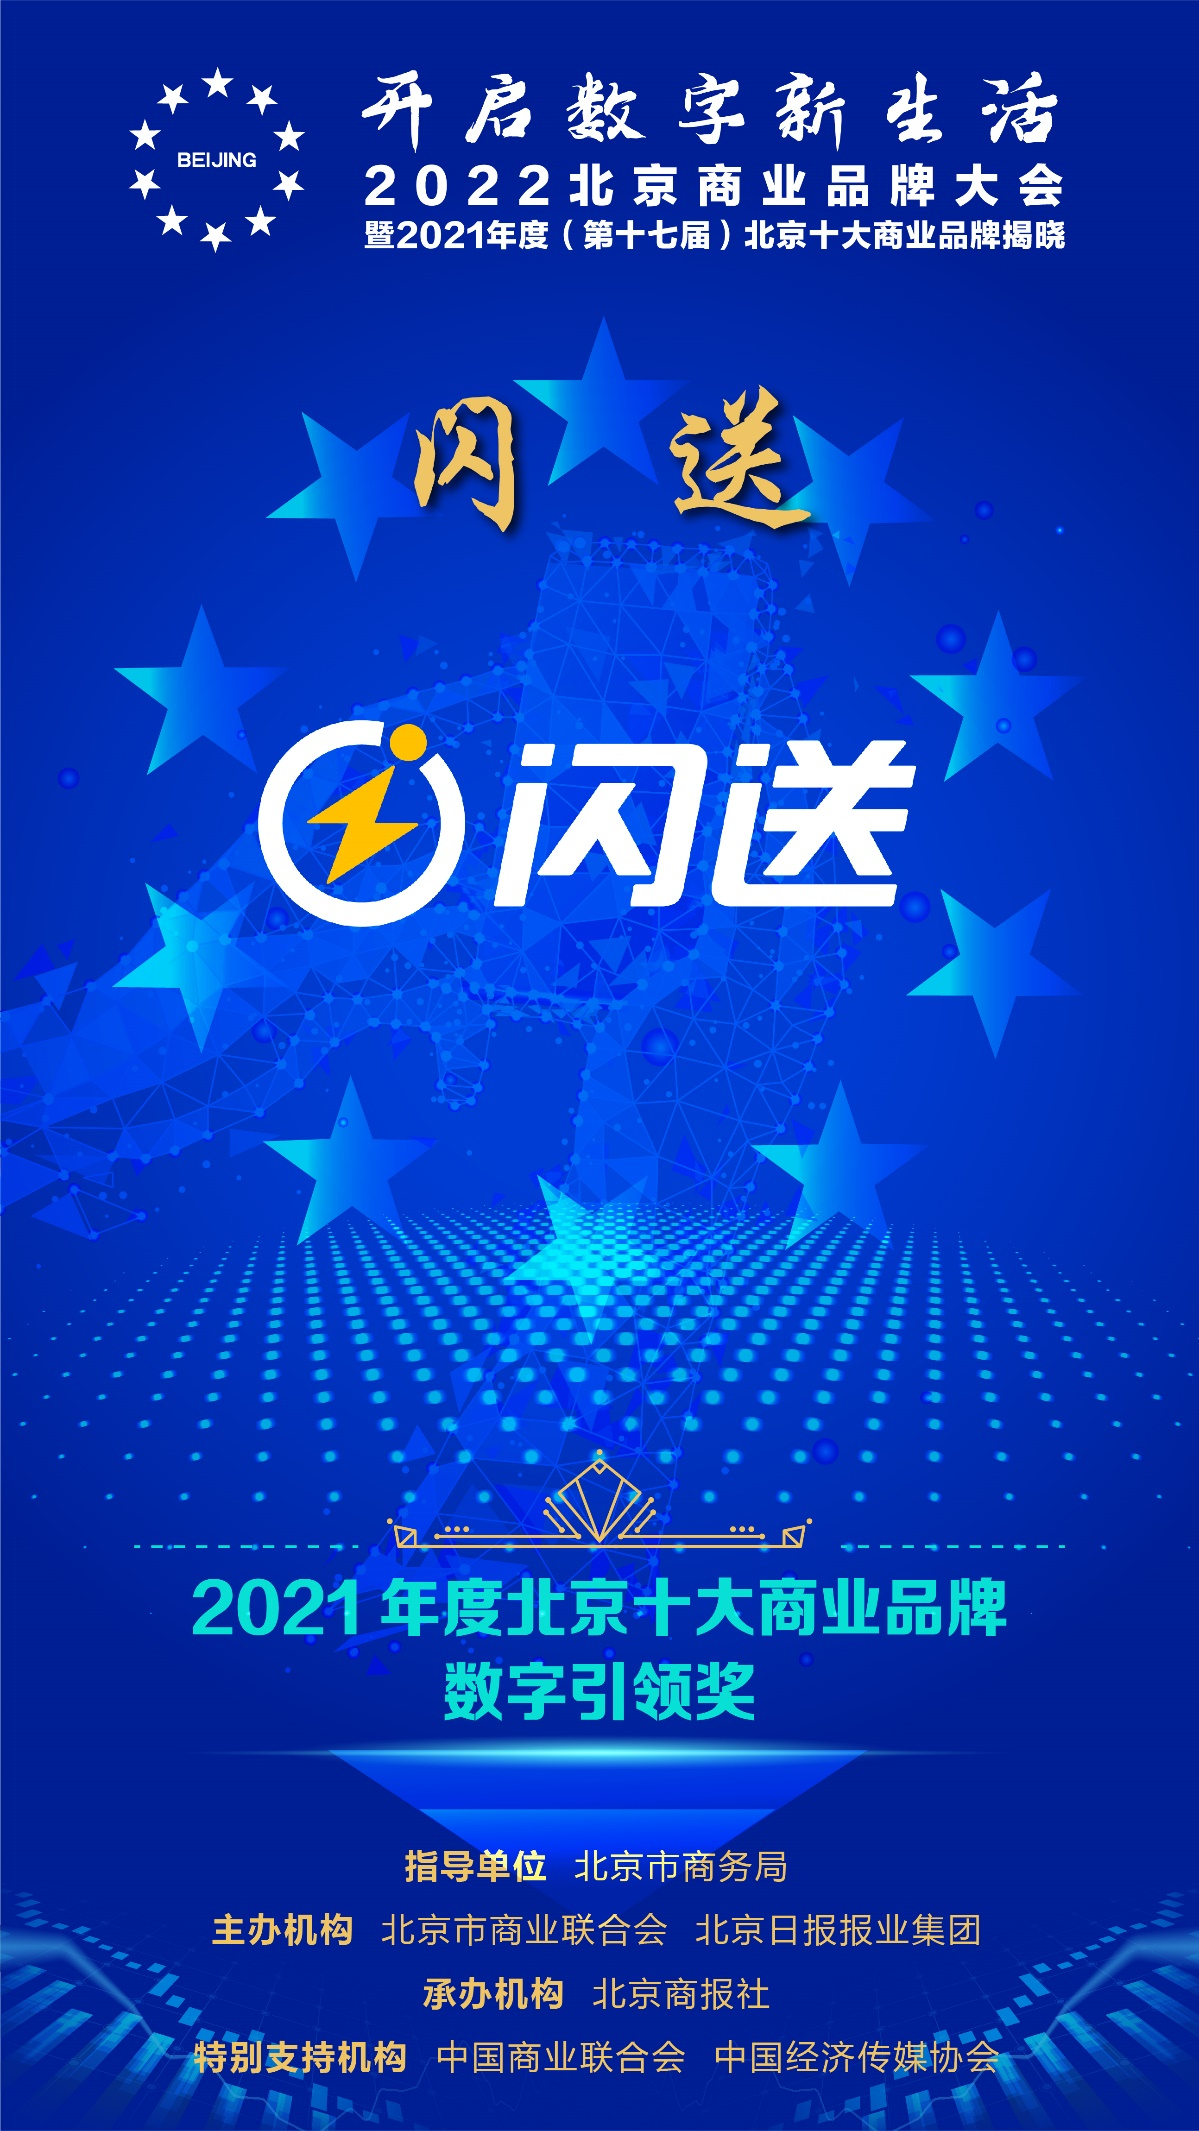 闪送荣获特设年度主题奖2021年度北京十大商业品牌数字引领奖